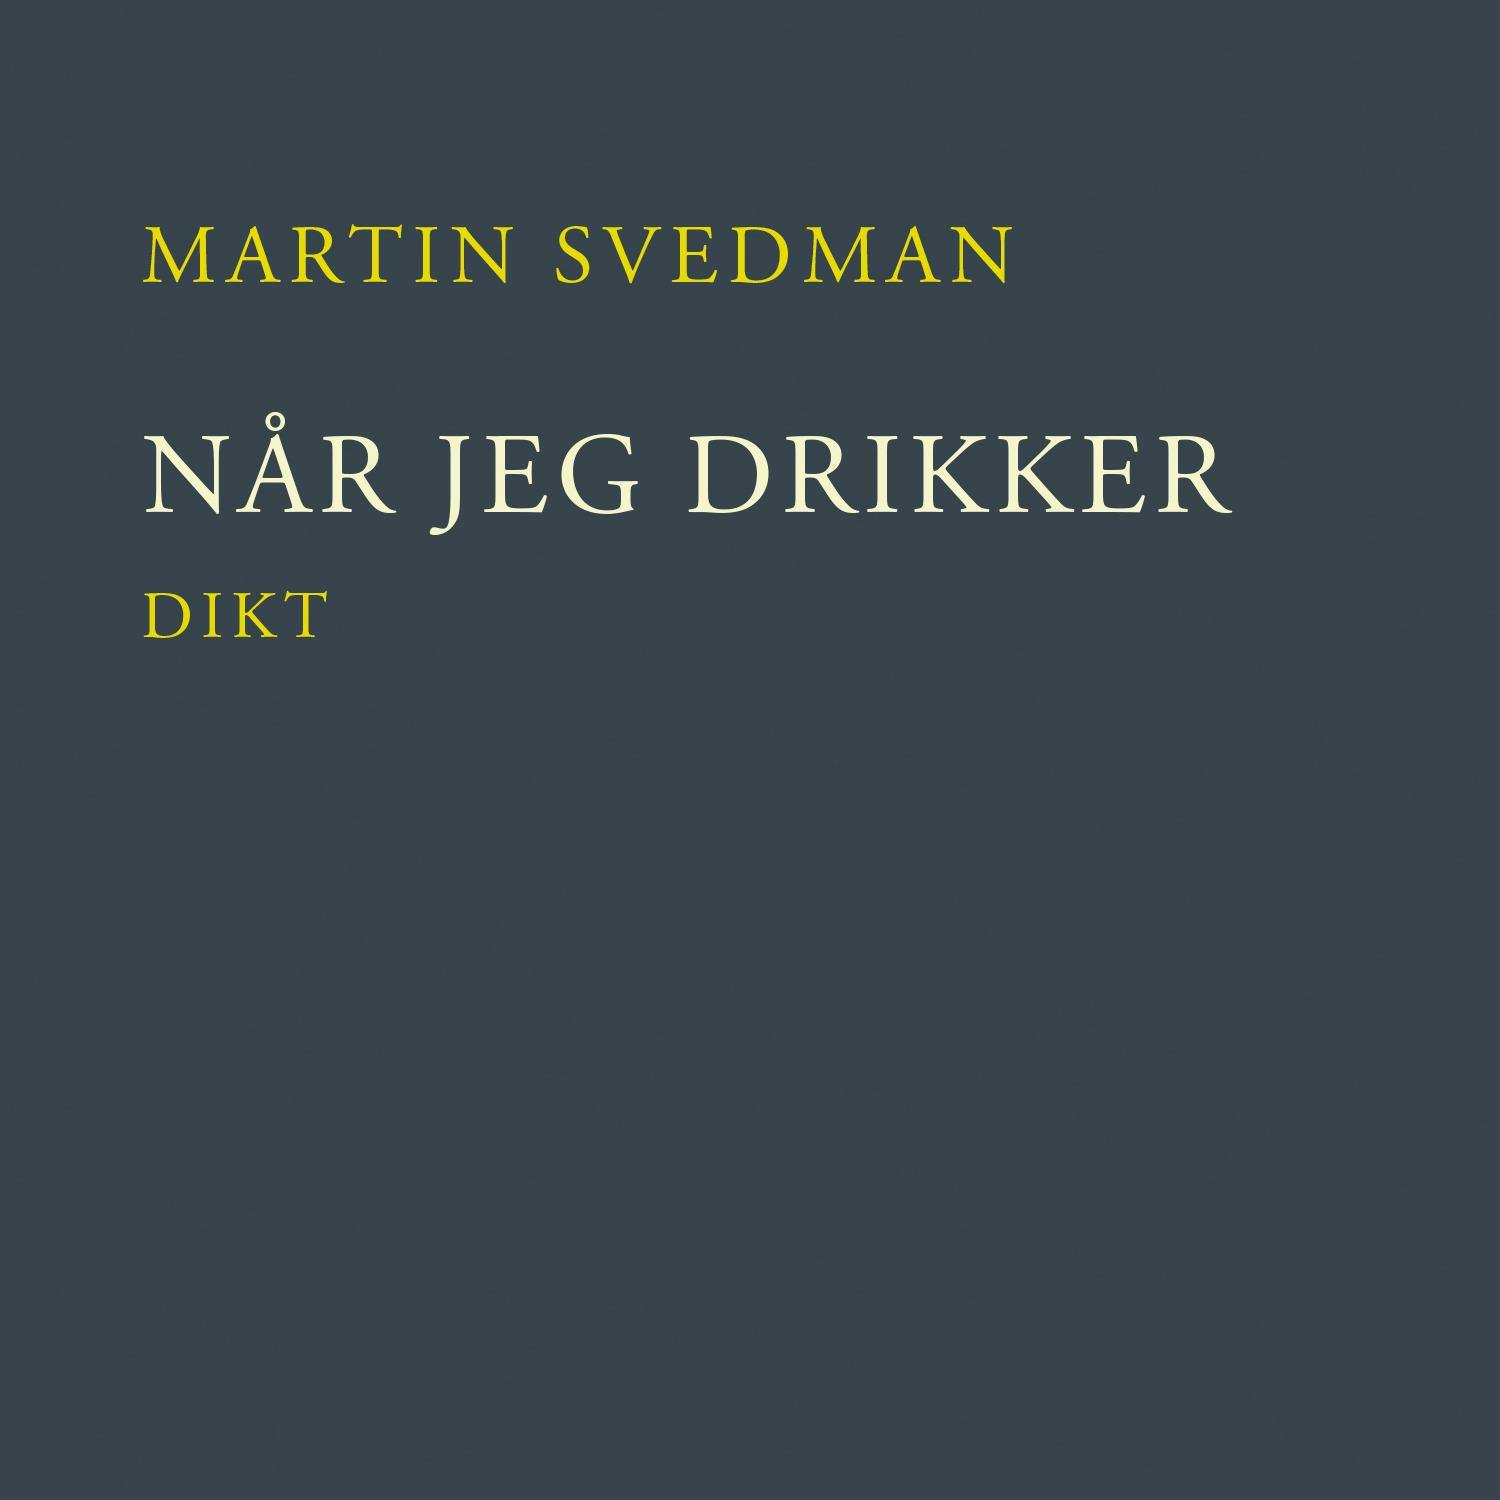 Når jeg drikker - Martin Svedman